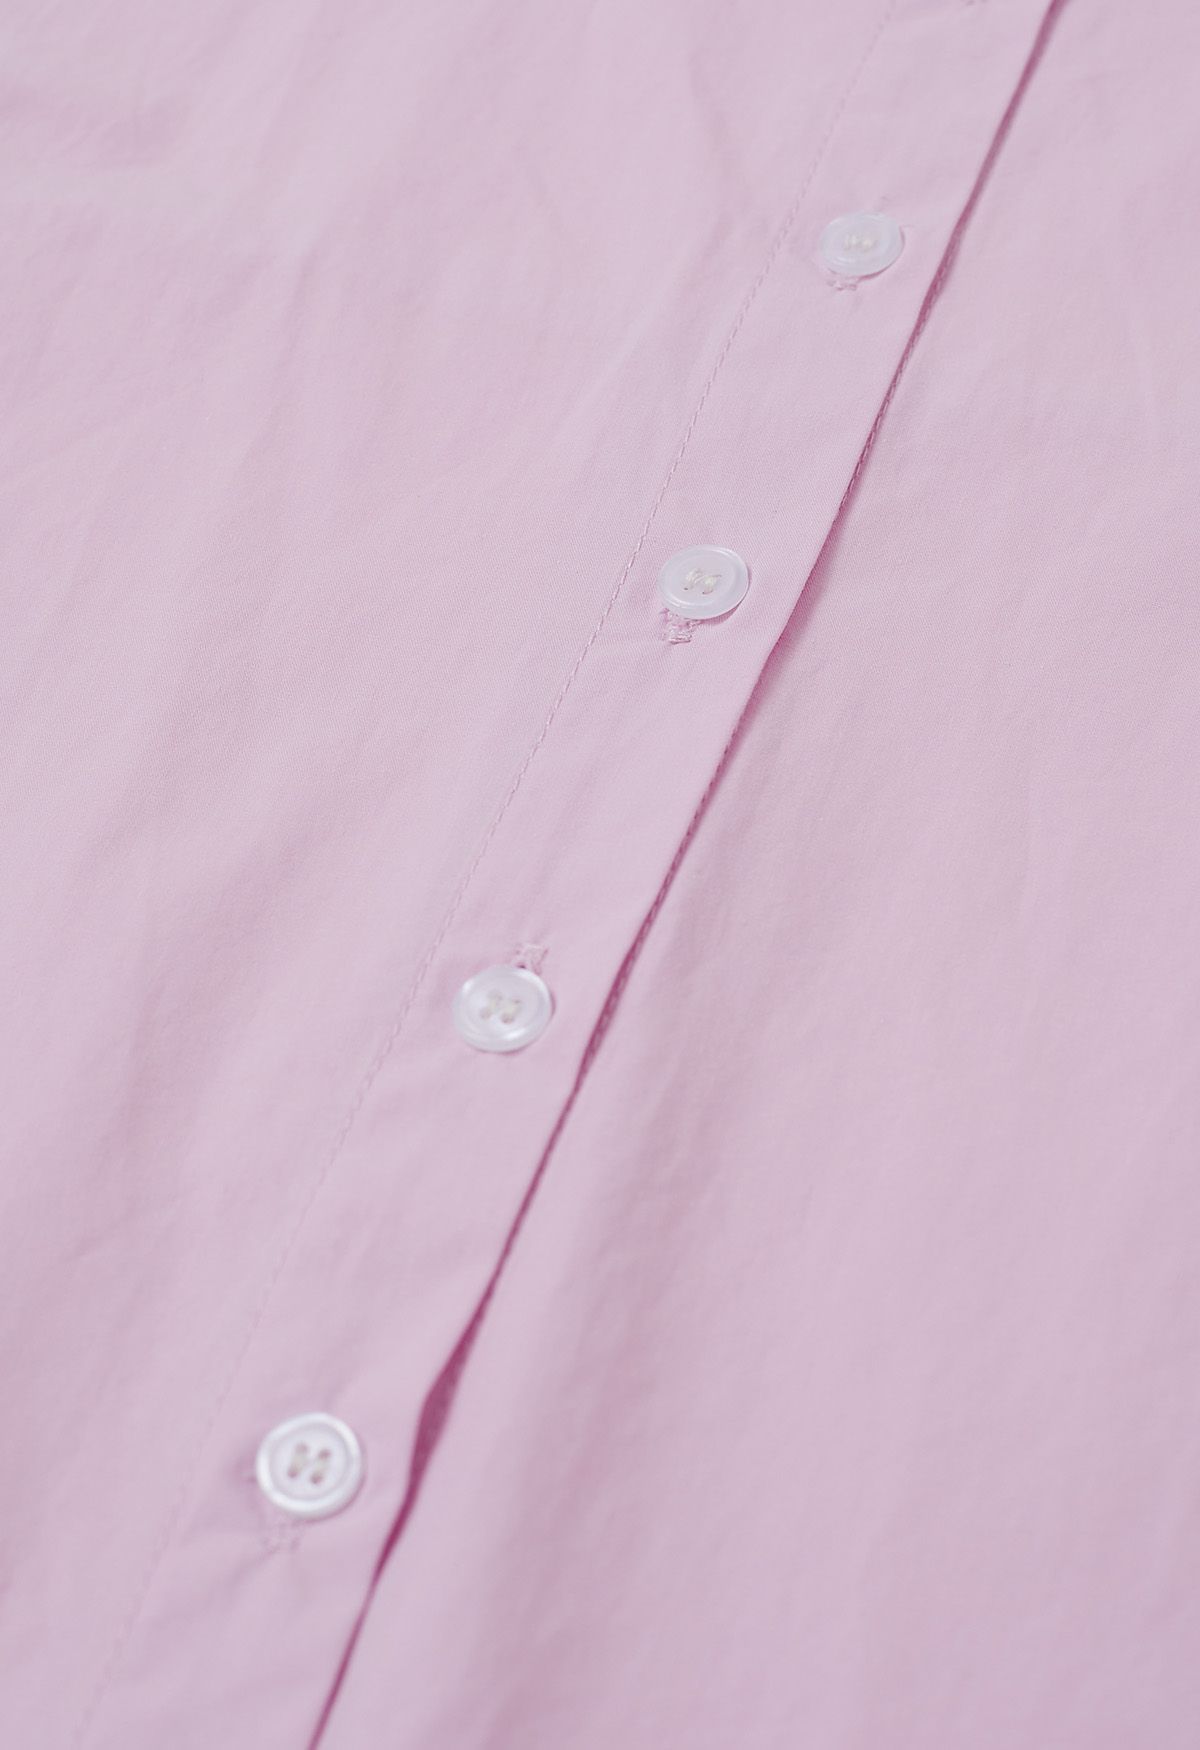 Chemise courte boutonnée chic en rose